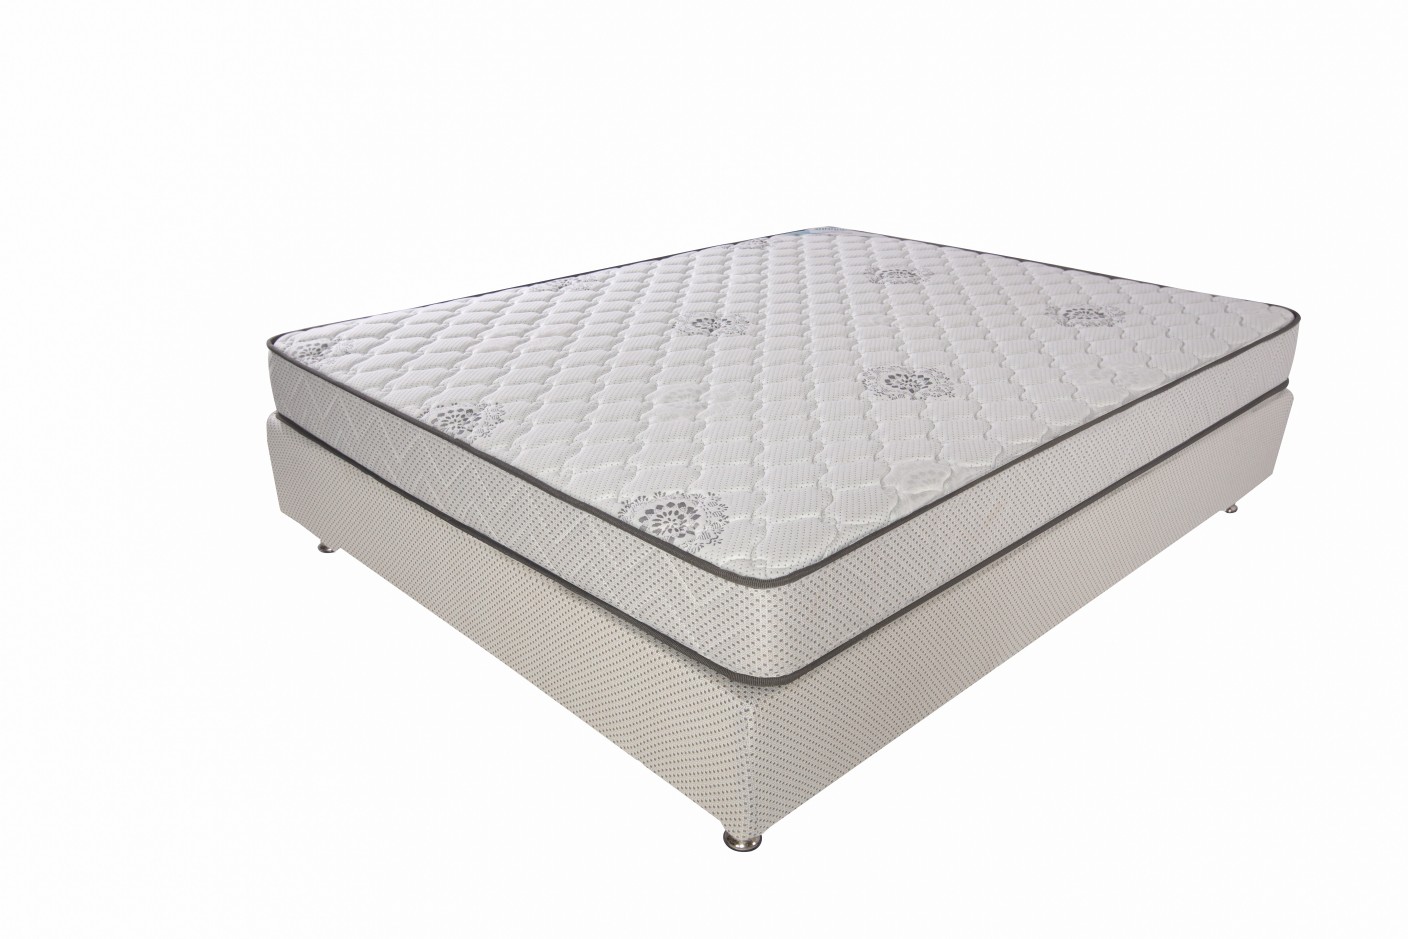 duroflex spring mattress price in india